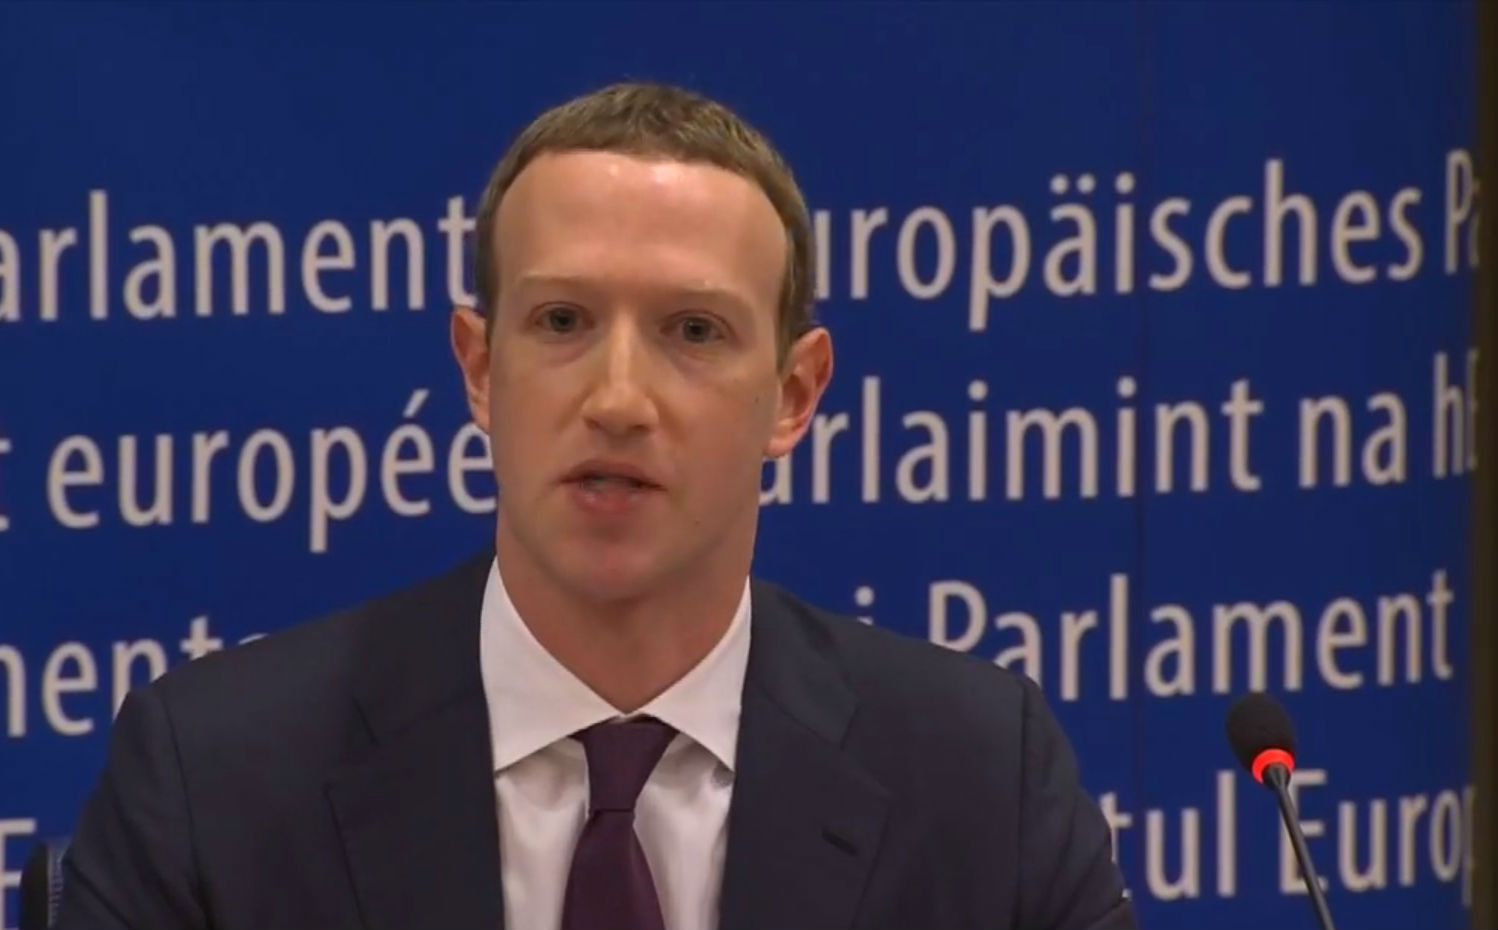 Mark Zuckerberg depõe ao Parlamento Europeu, mas escapa de grandes perguntas